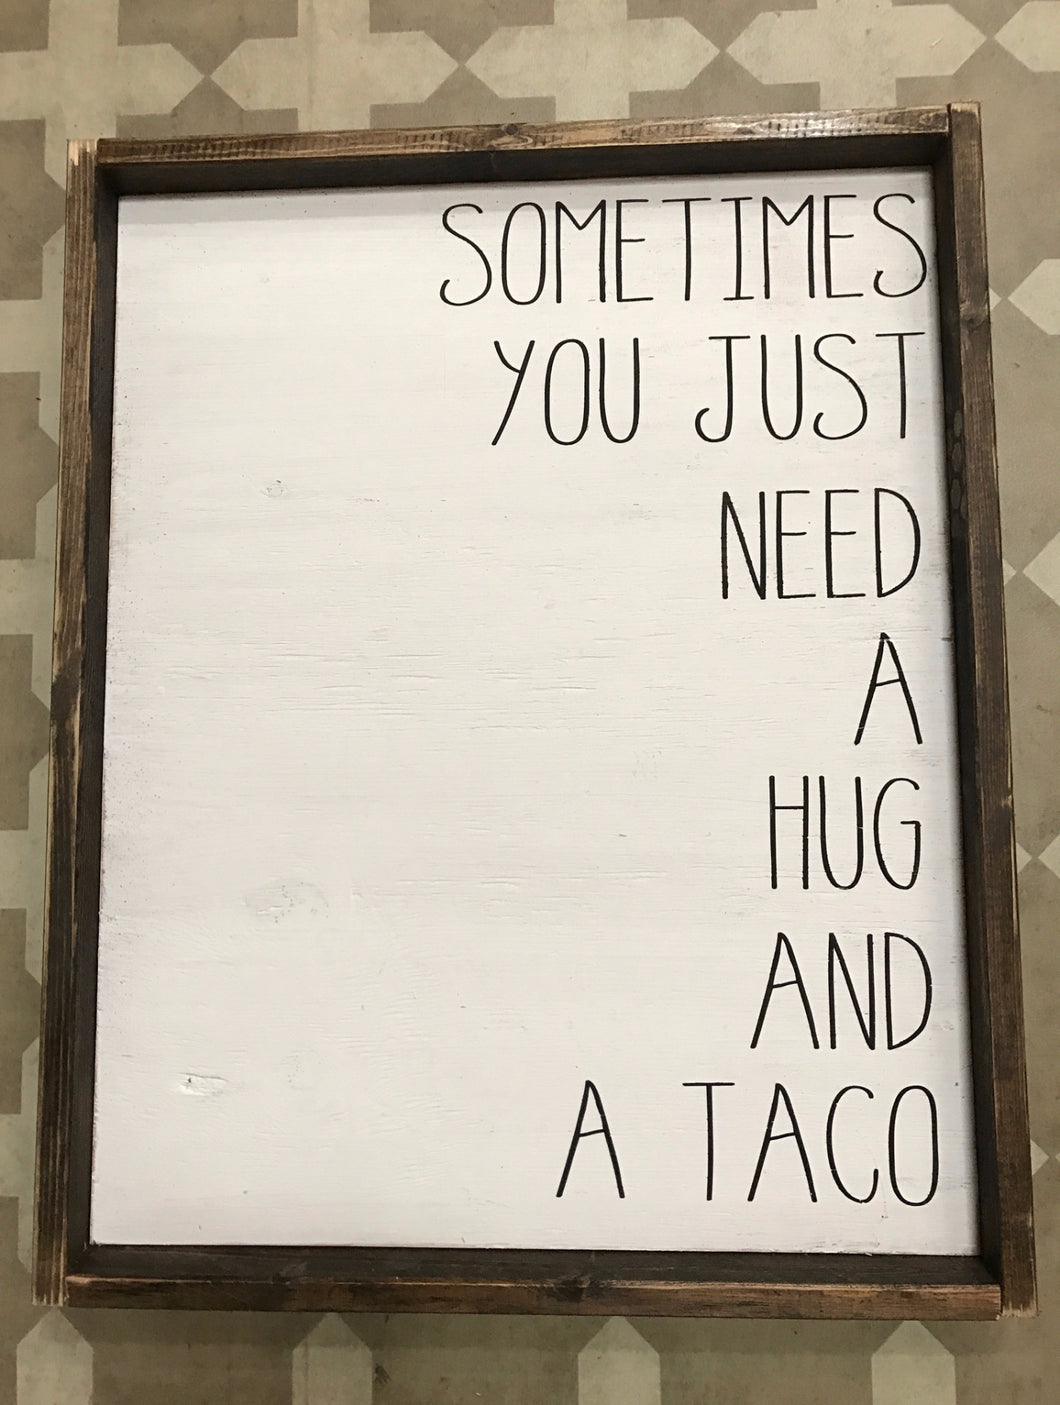 Sometimes you just need a hug & a taco